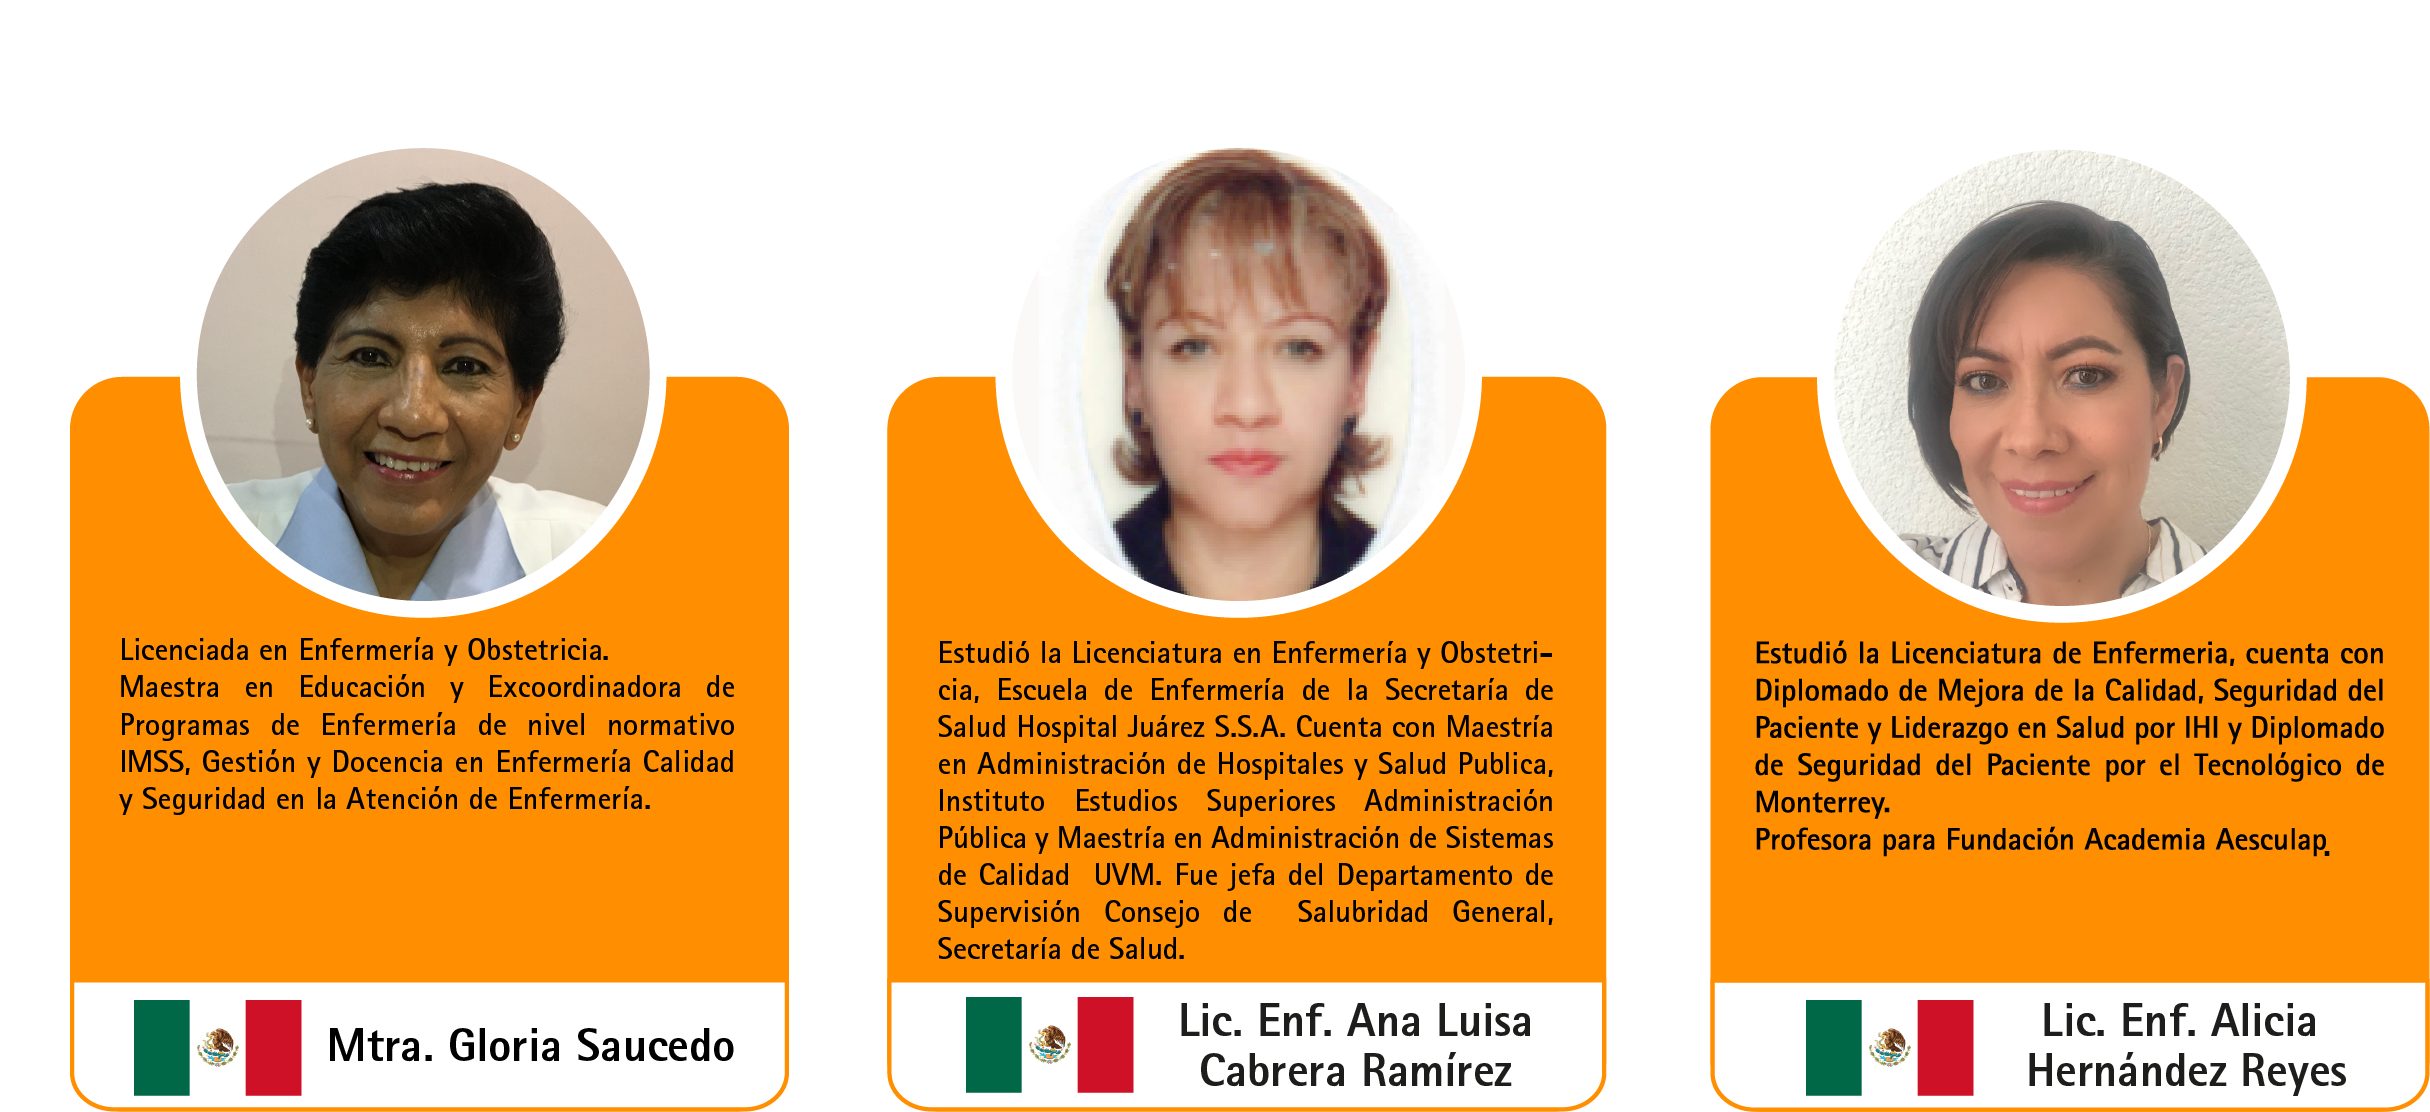 Acciones Esenciales para la | Fundación Academia Aesculap México .